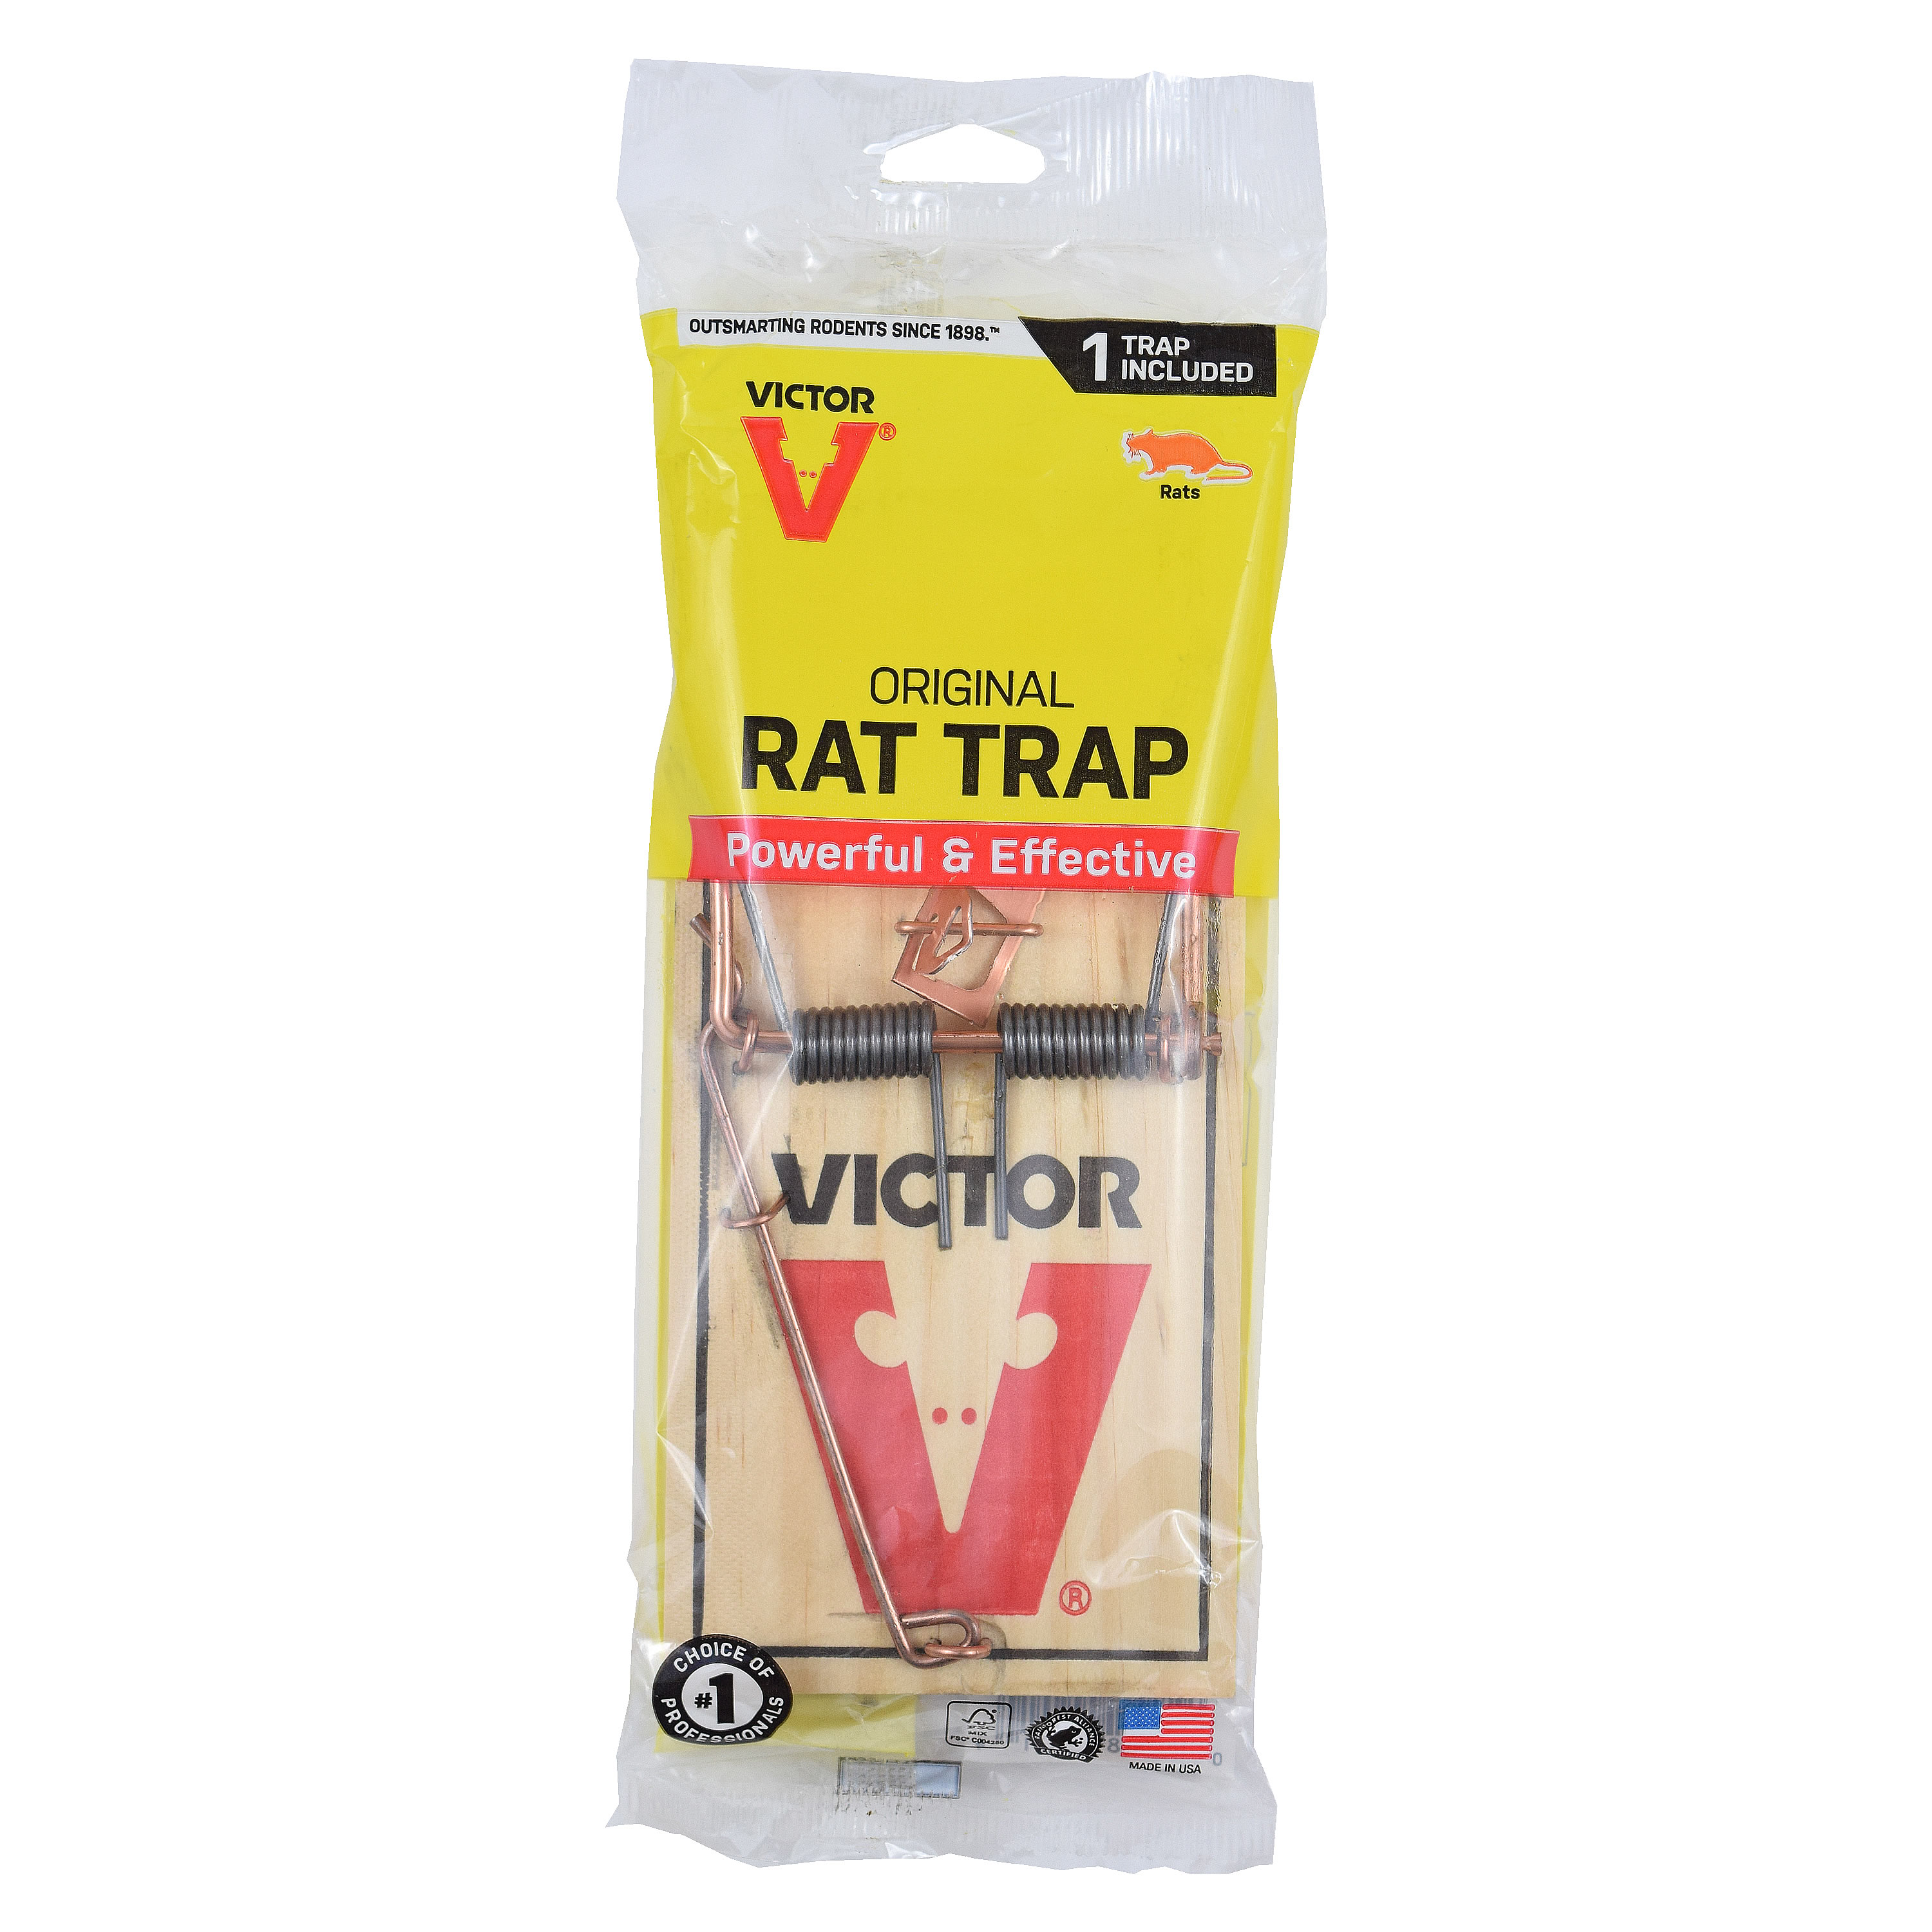 Victor Rat Trap at